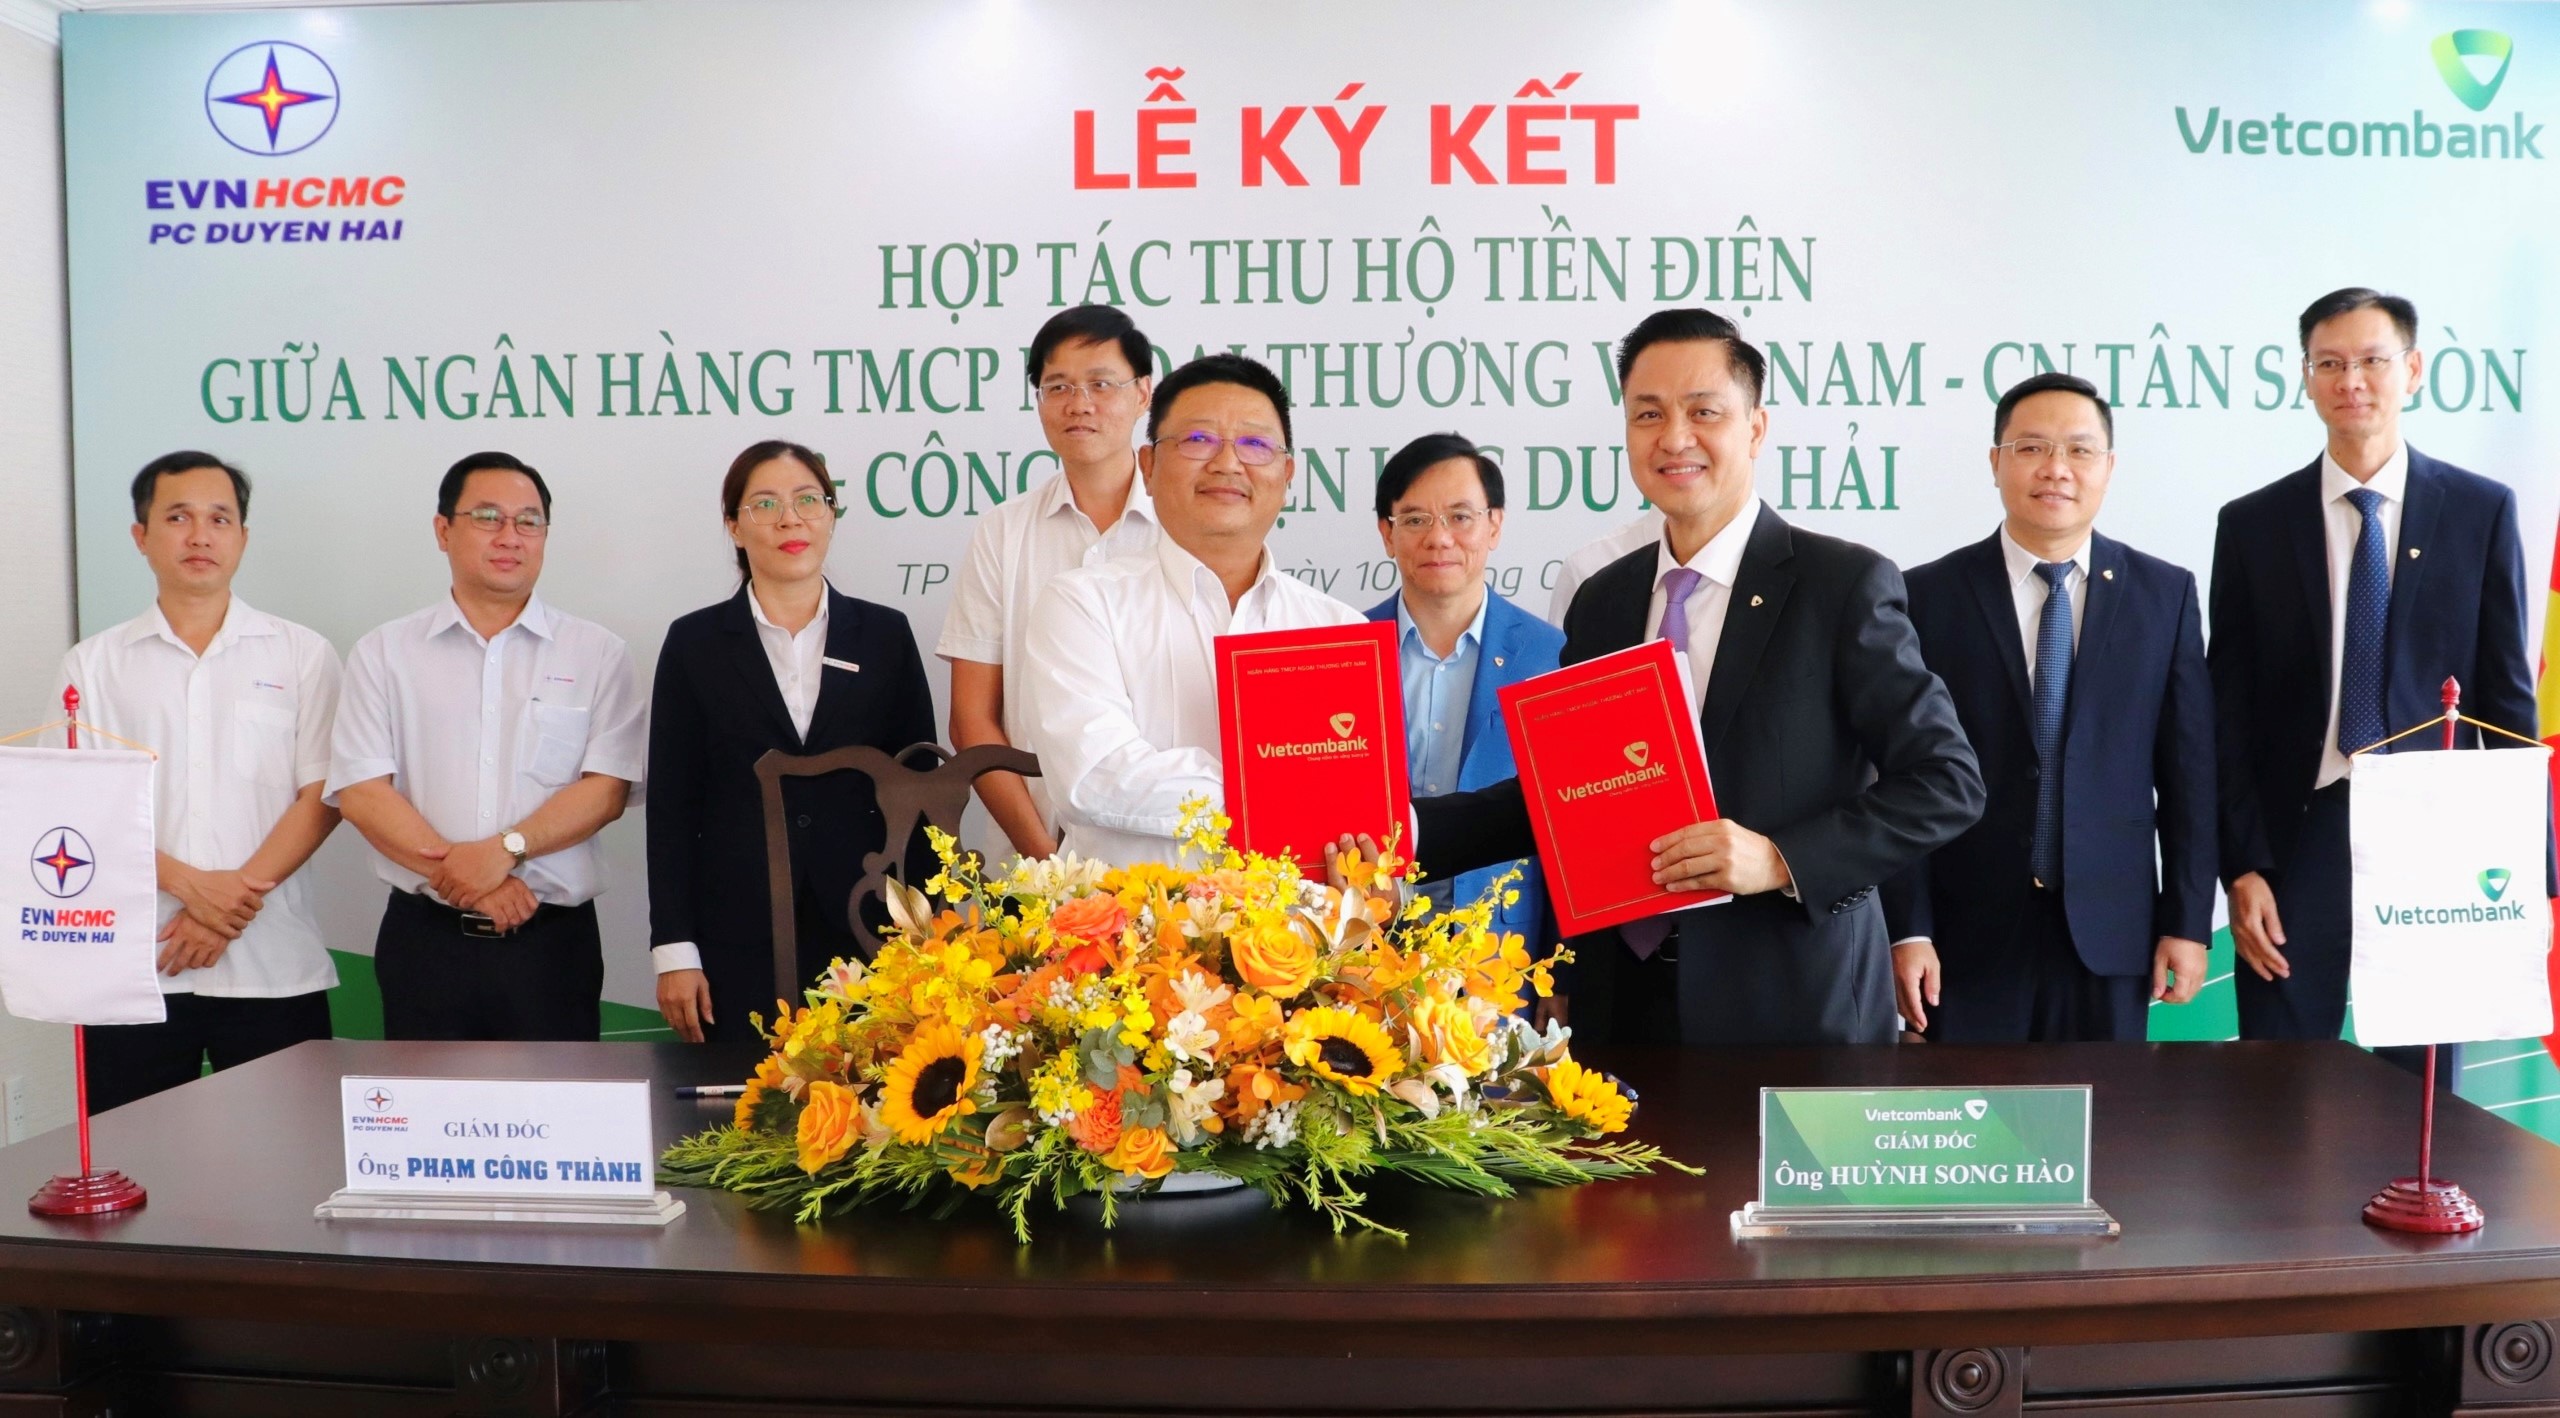 Vietcombank Tân Sài Gòn ký kết hợp tác thu hộ tiền điện với Công ty điện lực Duyên Hải